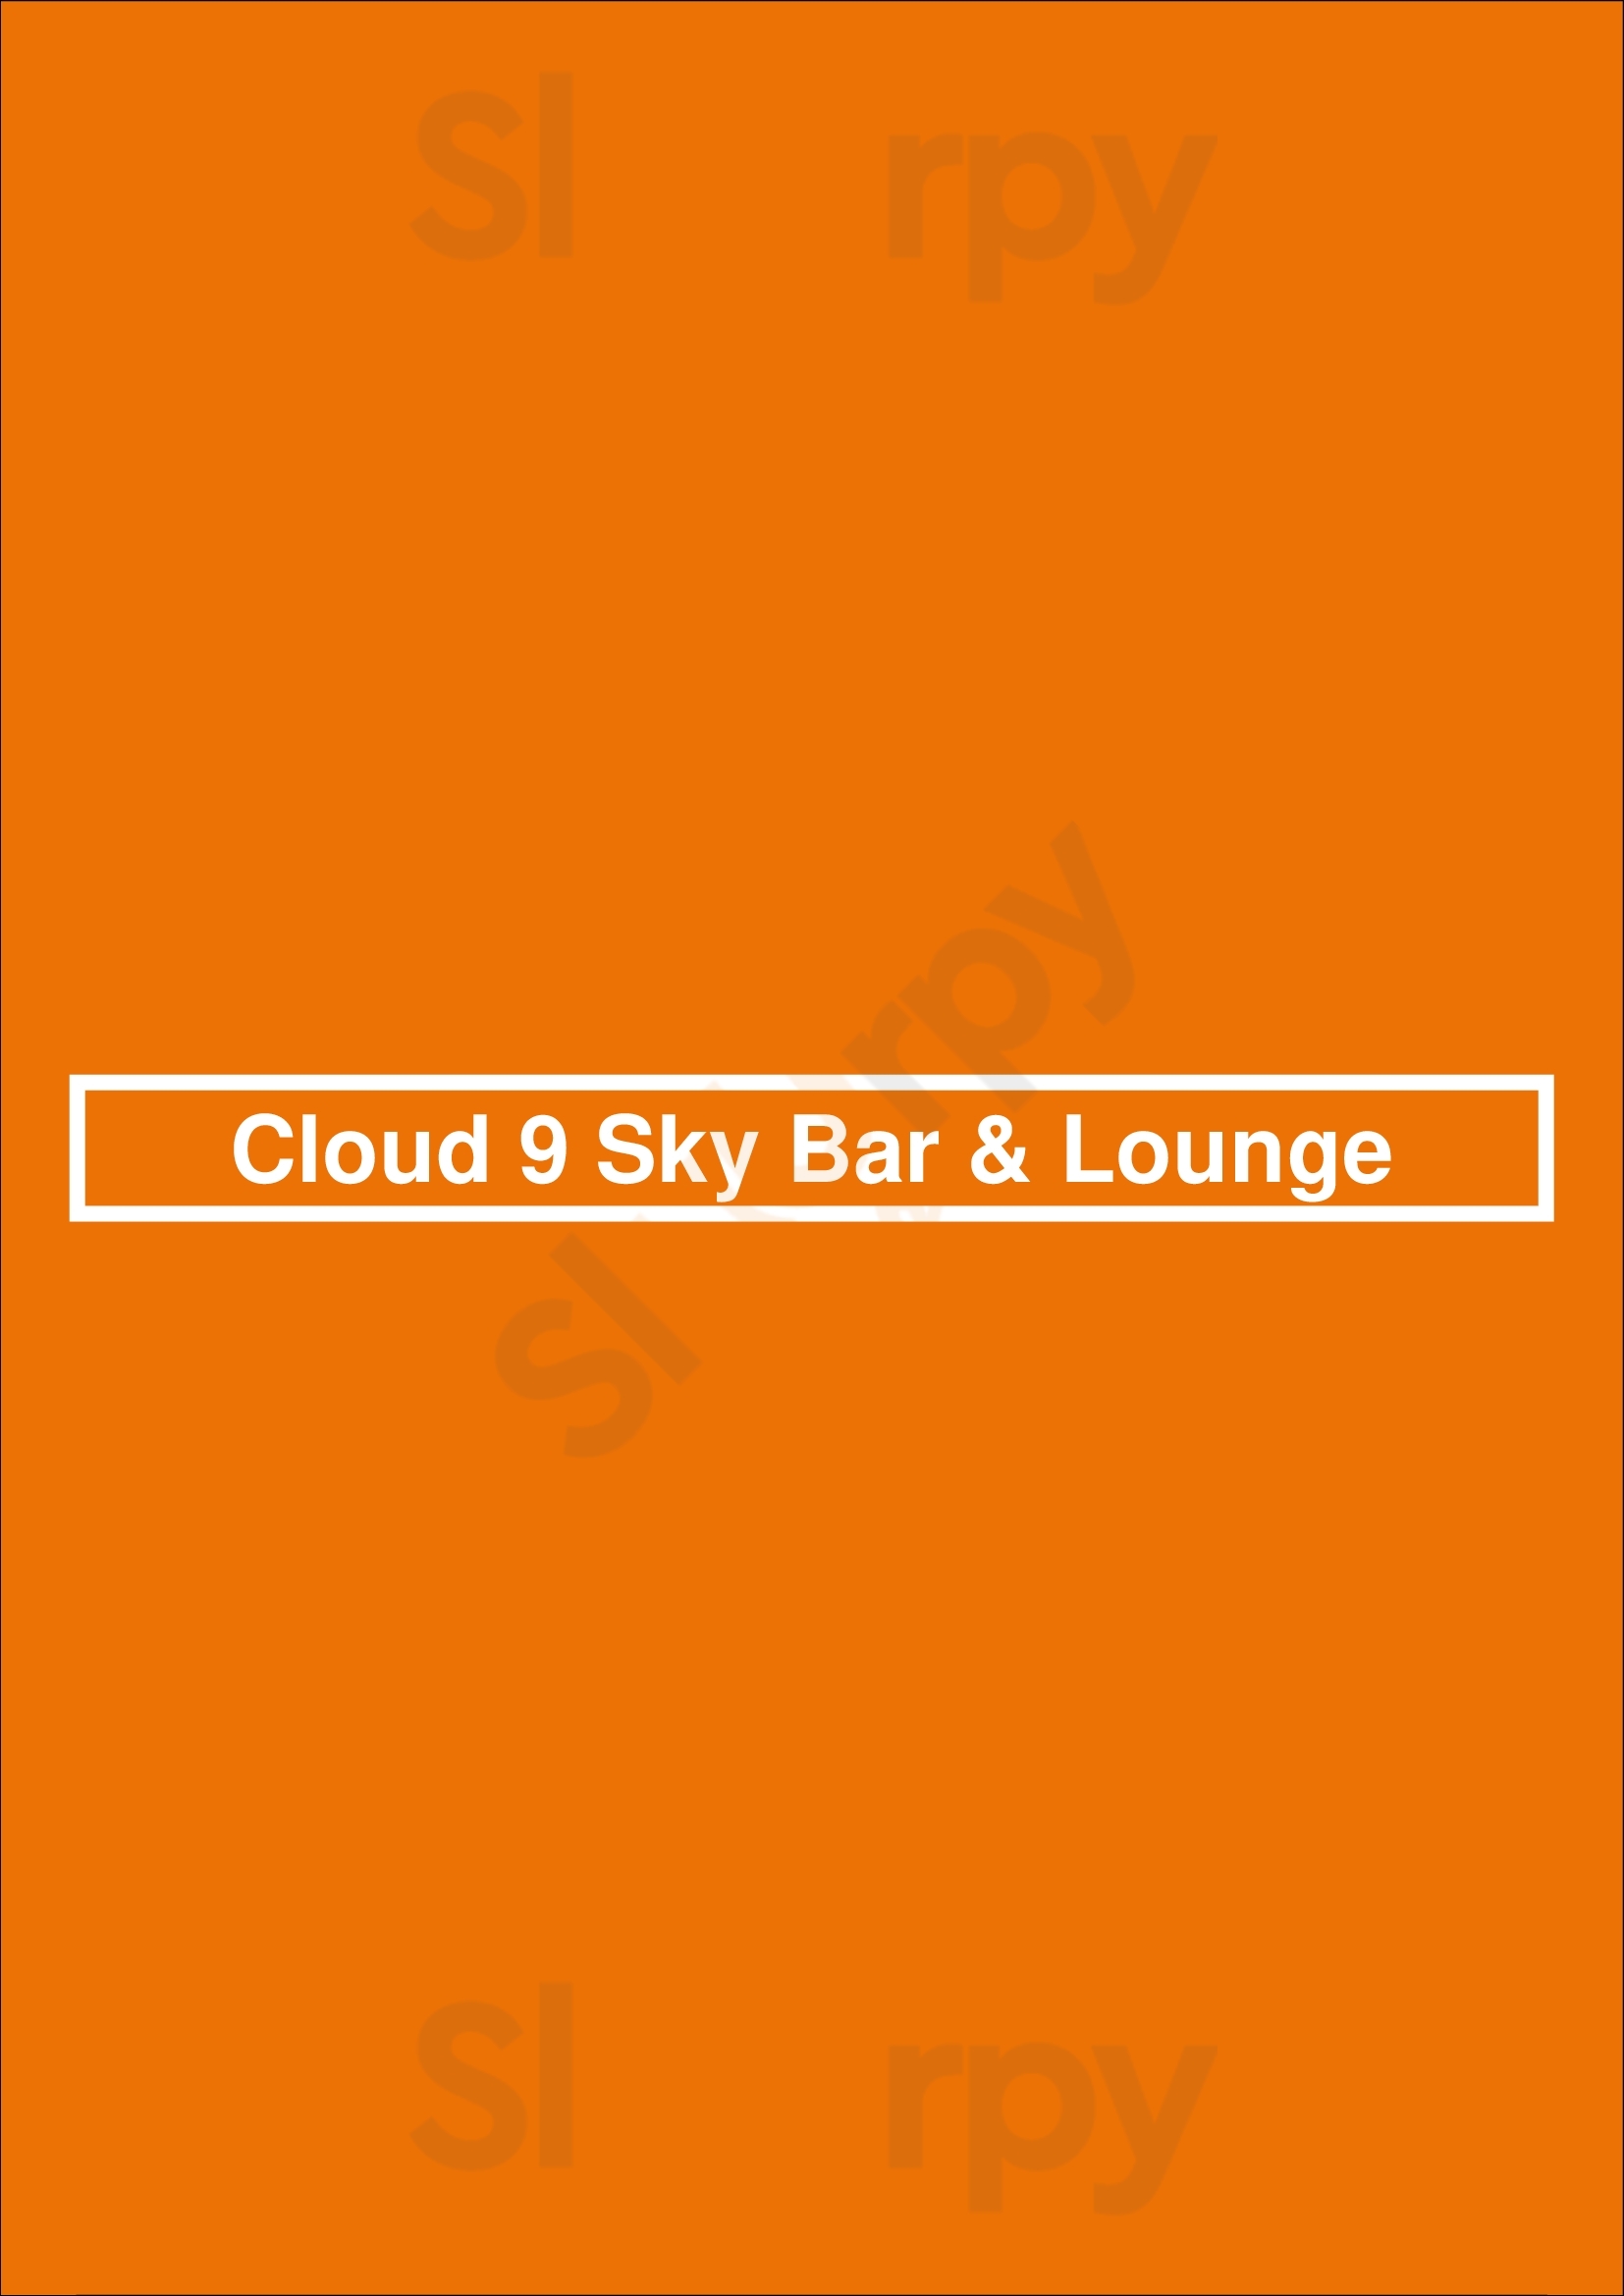 Cloud 9 Sky Bar & Lounge Praha Menu - 1